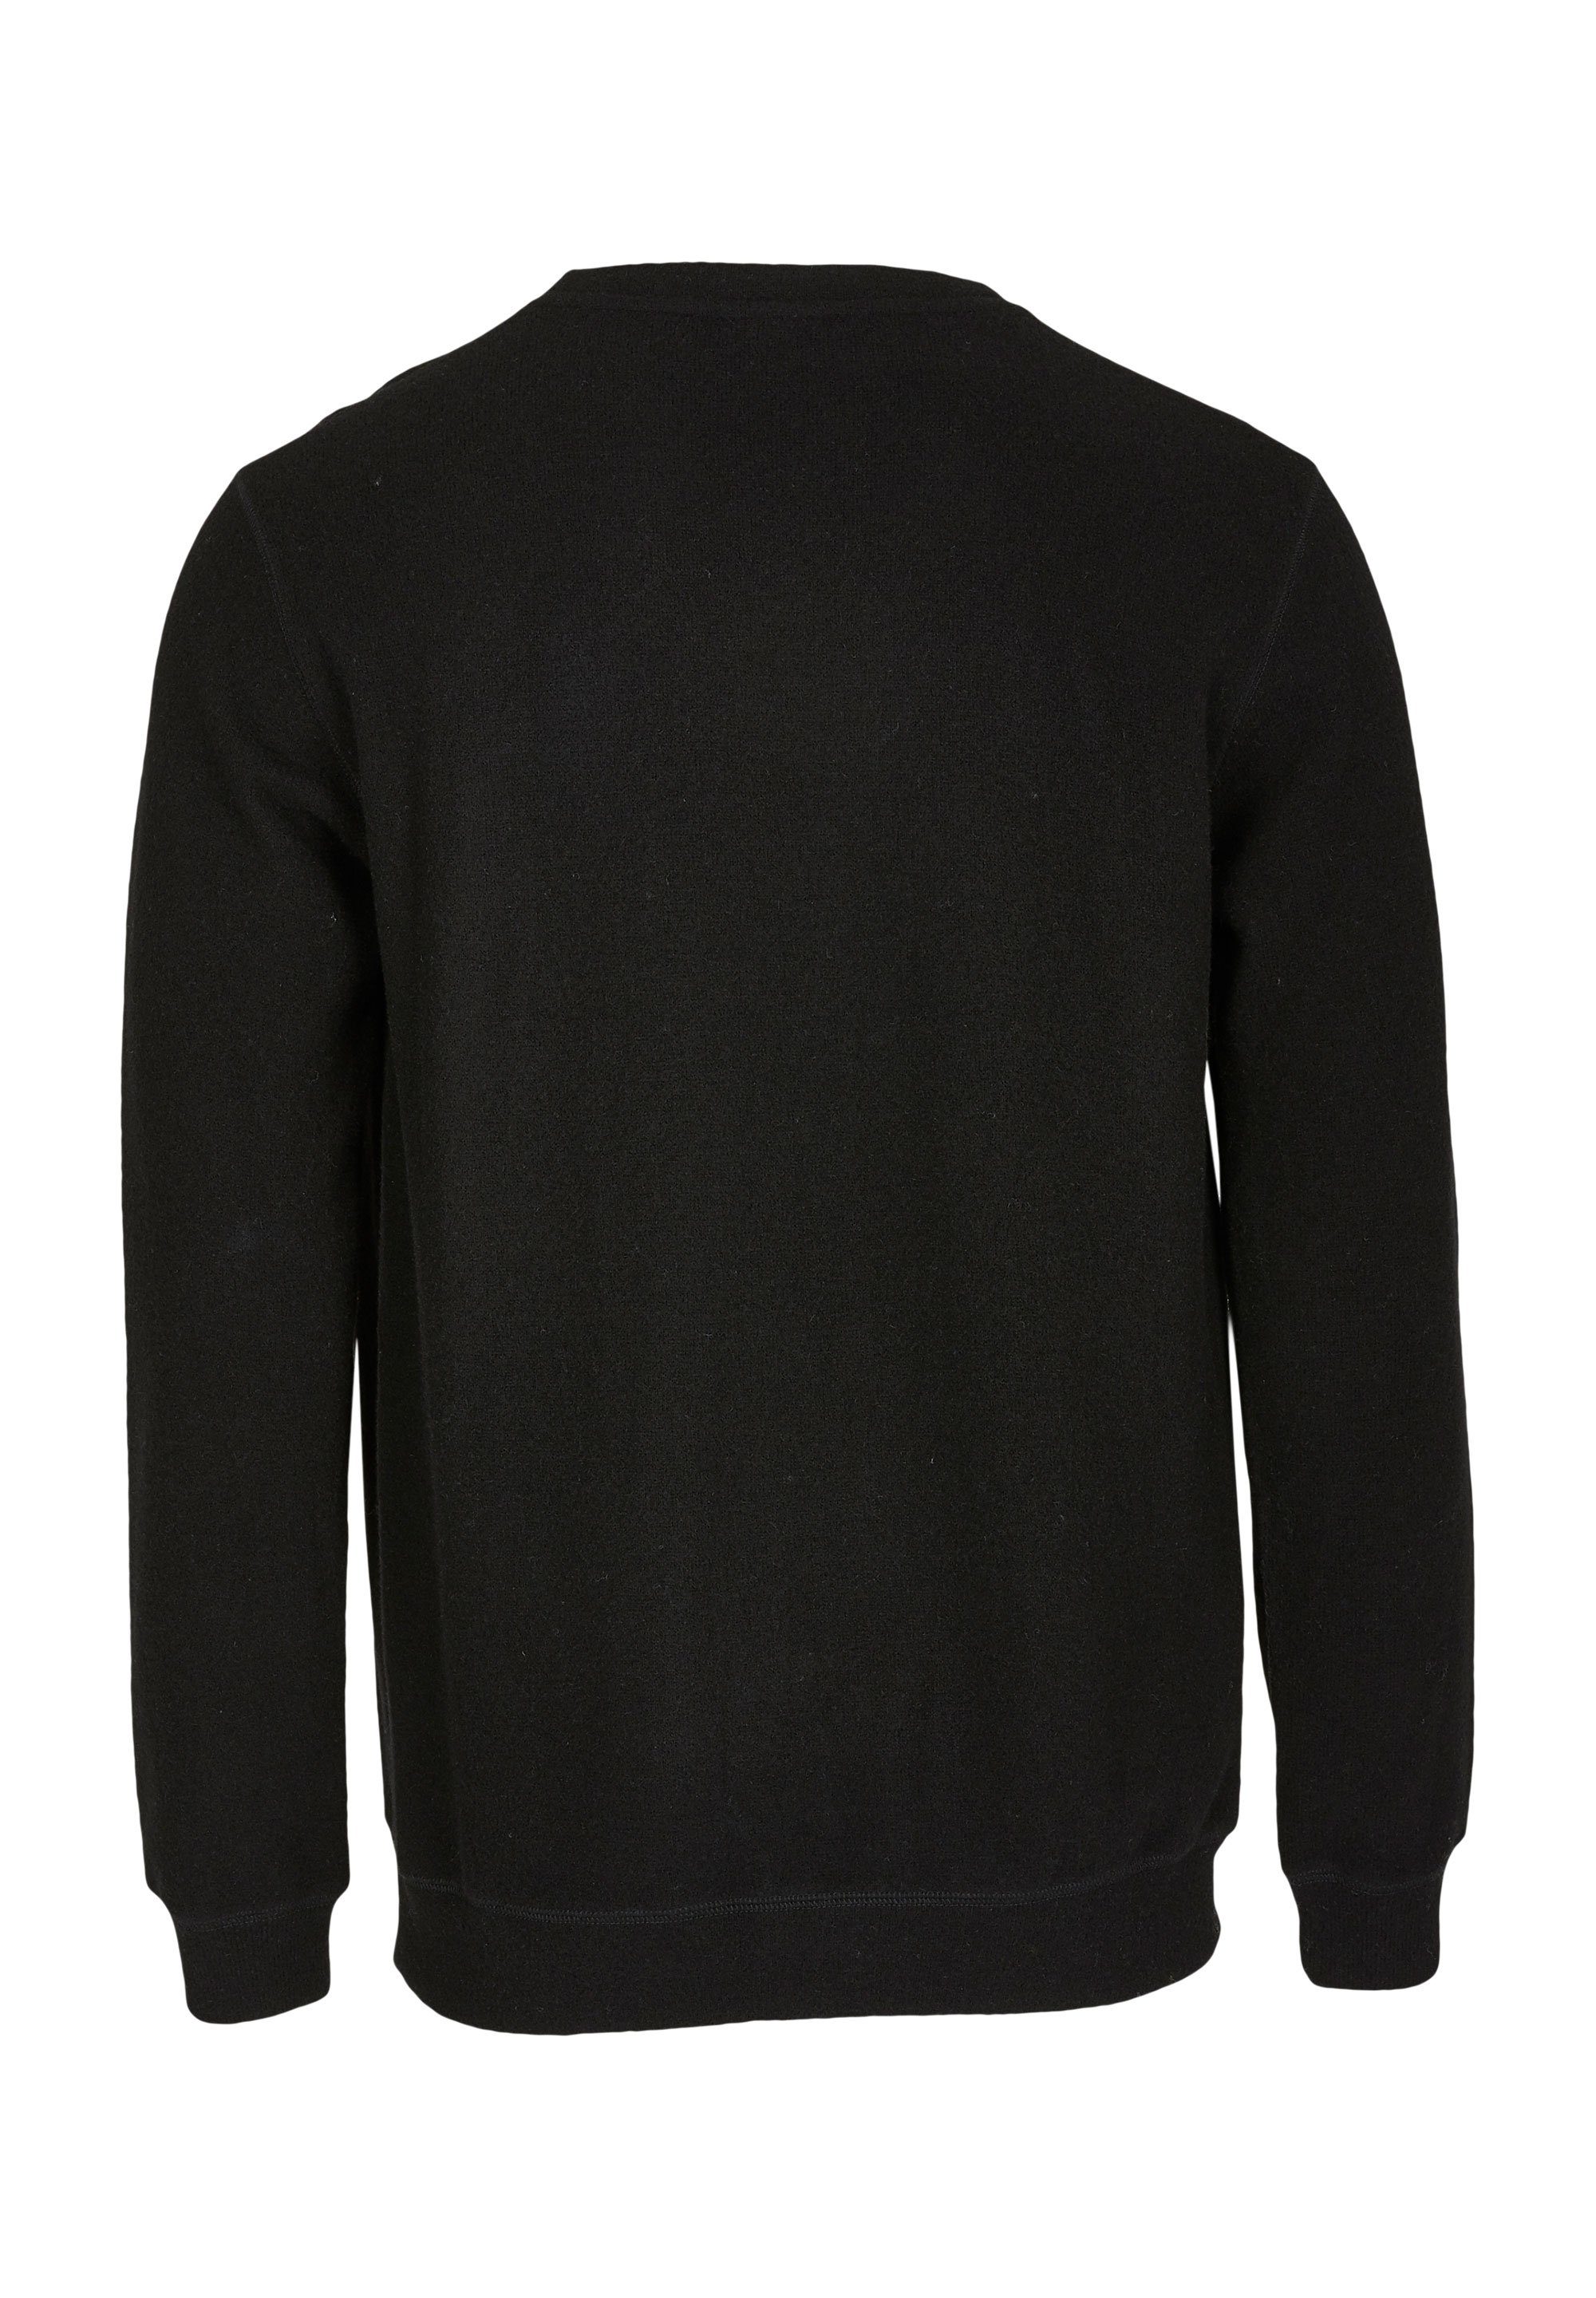 Noitch gebondeter Sweatshirt Cleptomanicx schwarz aus Wolle